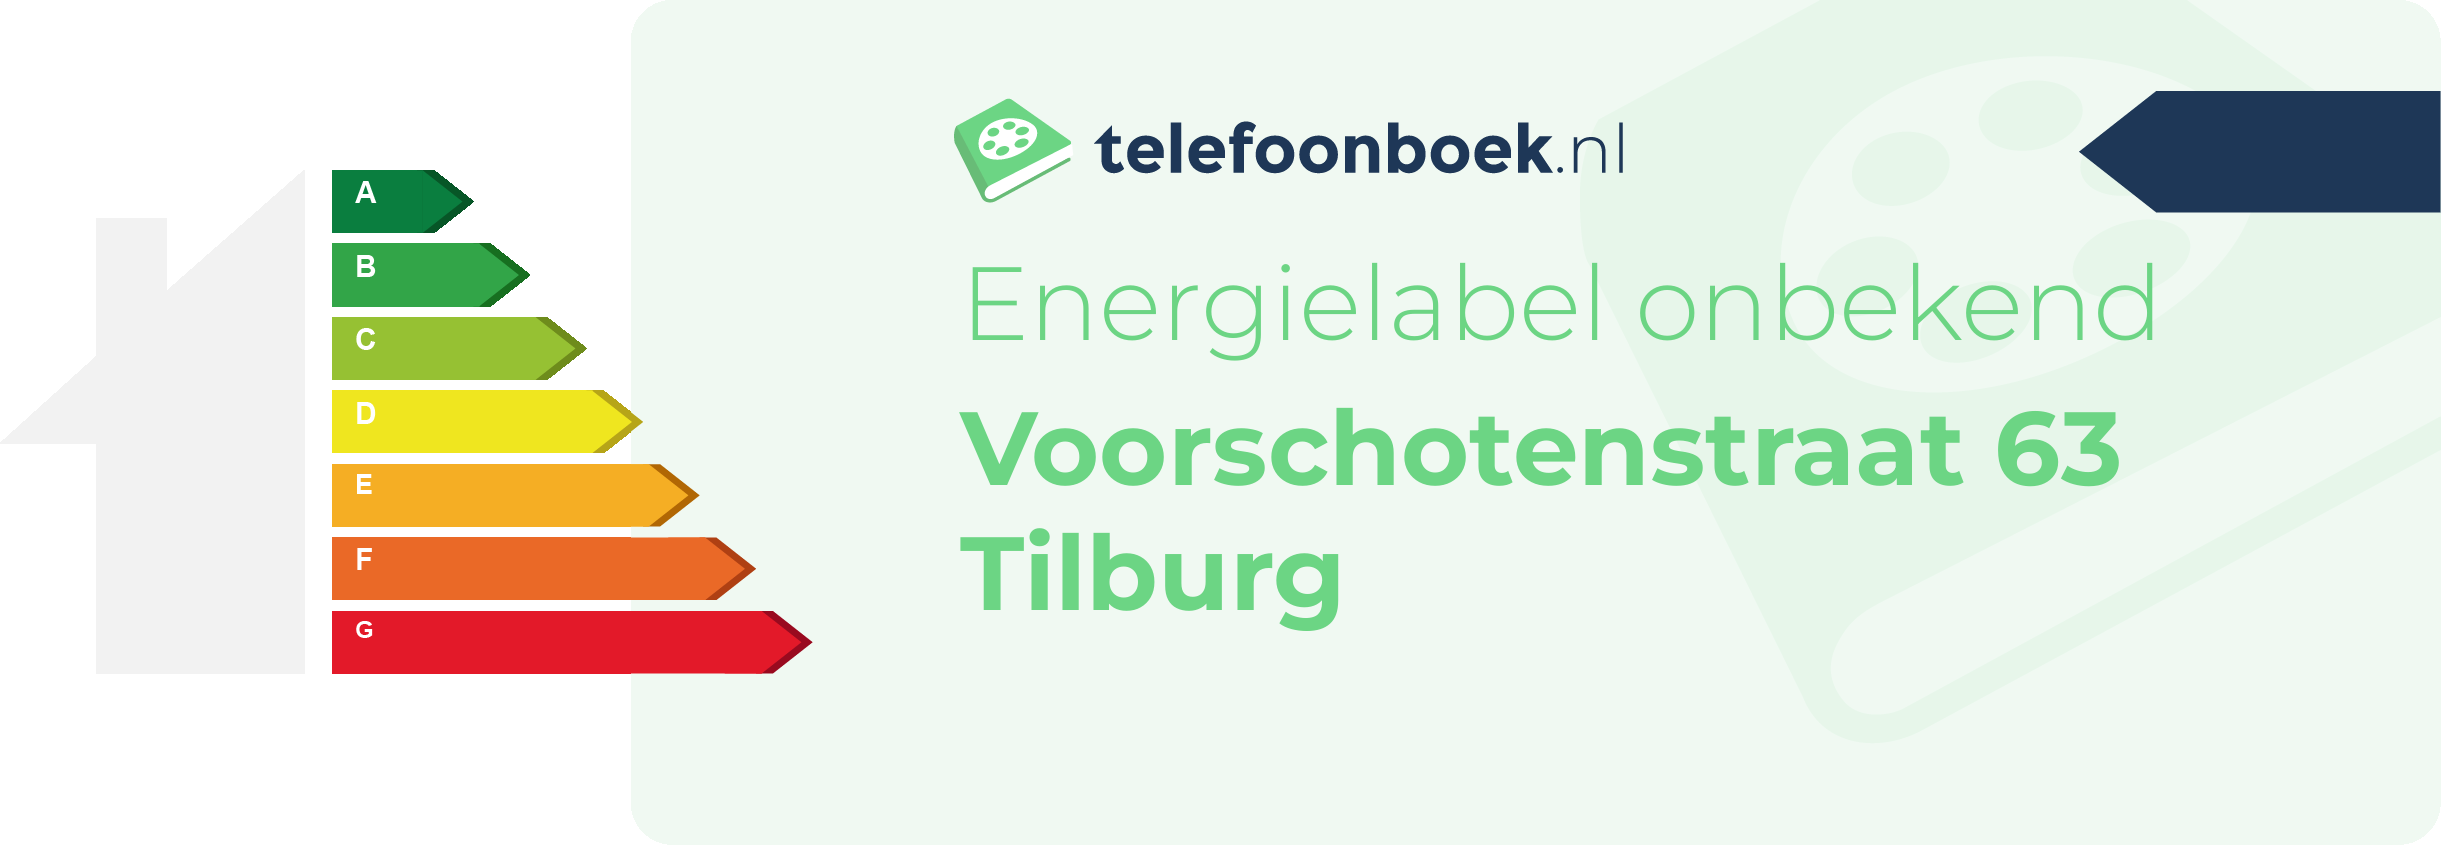 Energielabel Voorschotenstraat 63 Tilburg